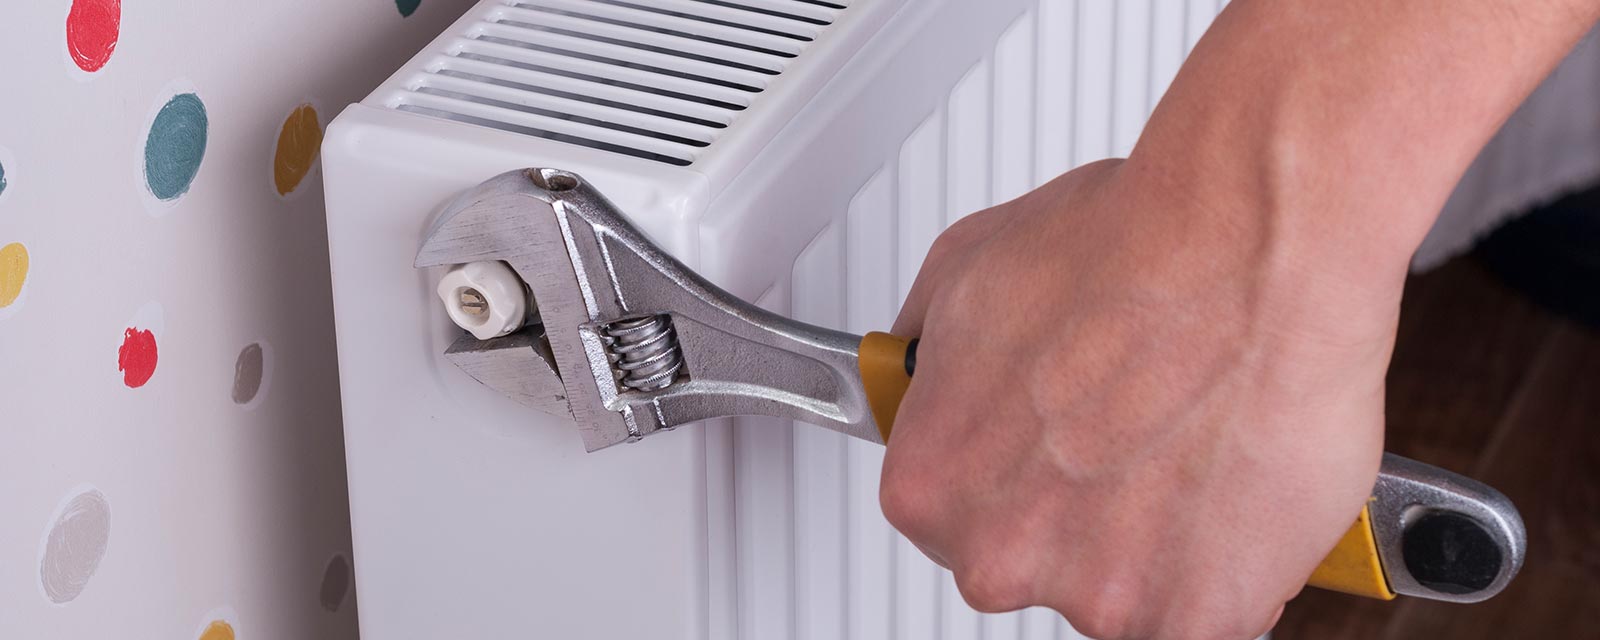 Purge des radiateurs : Quand et comment les purger ?